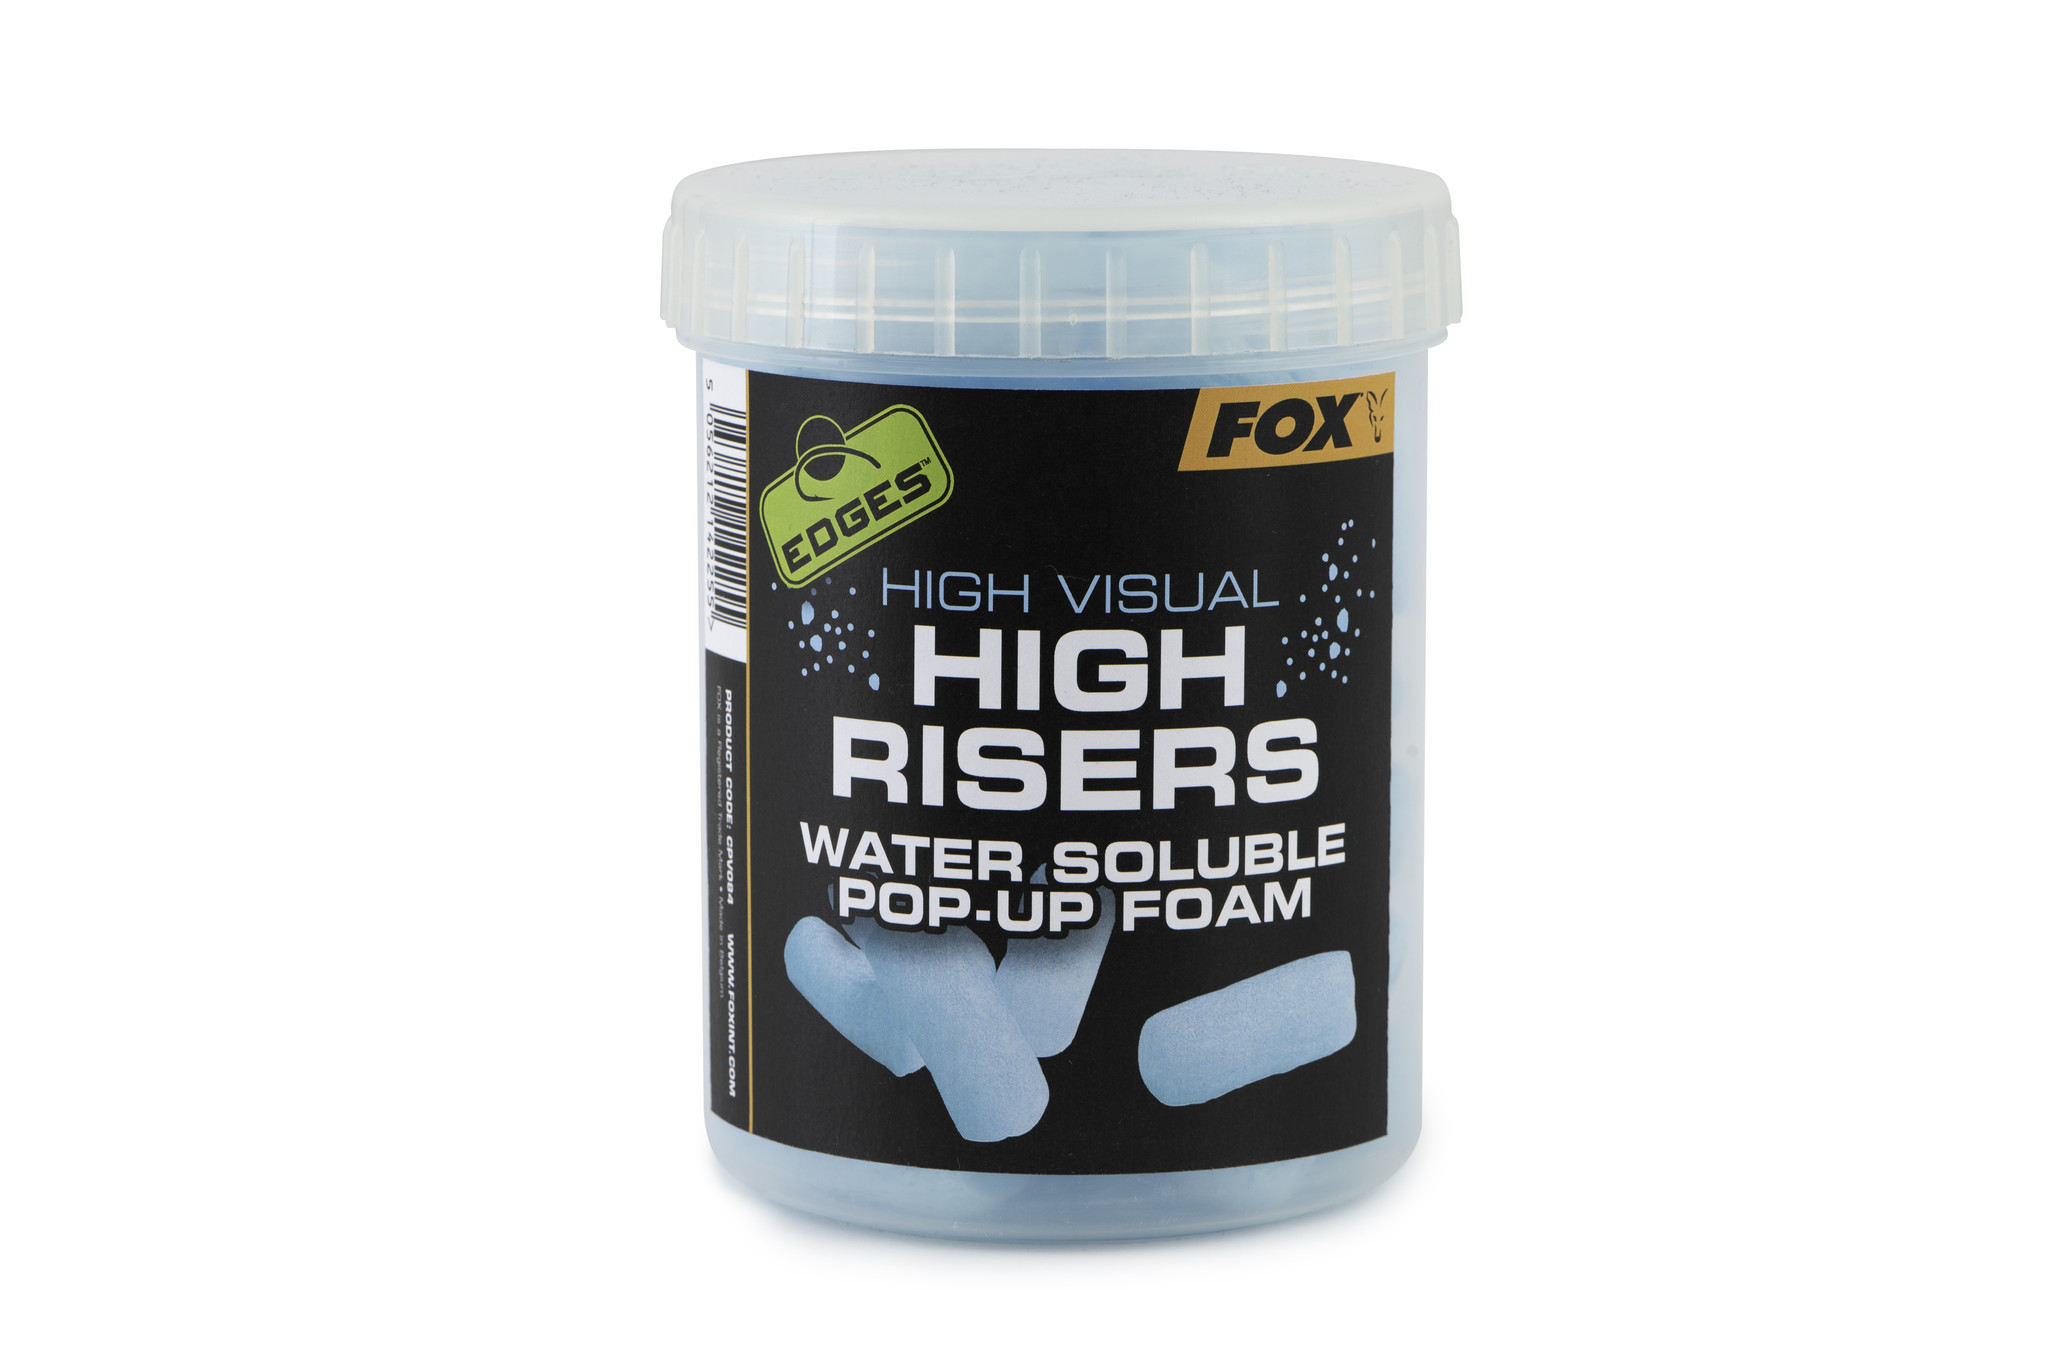 Fox High Visual High Risers Pop-Up Foam Tube